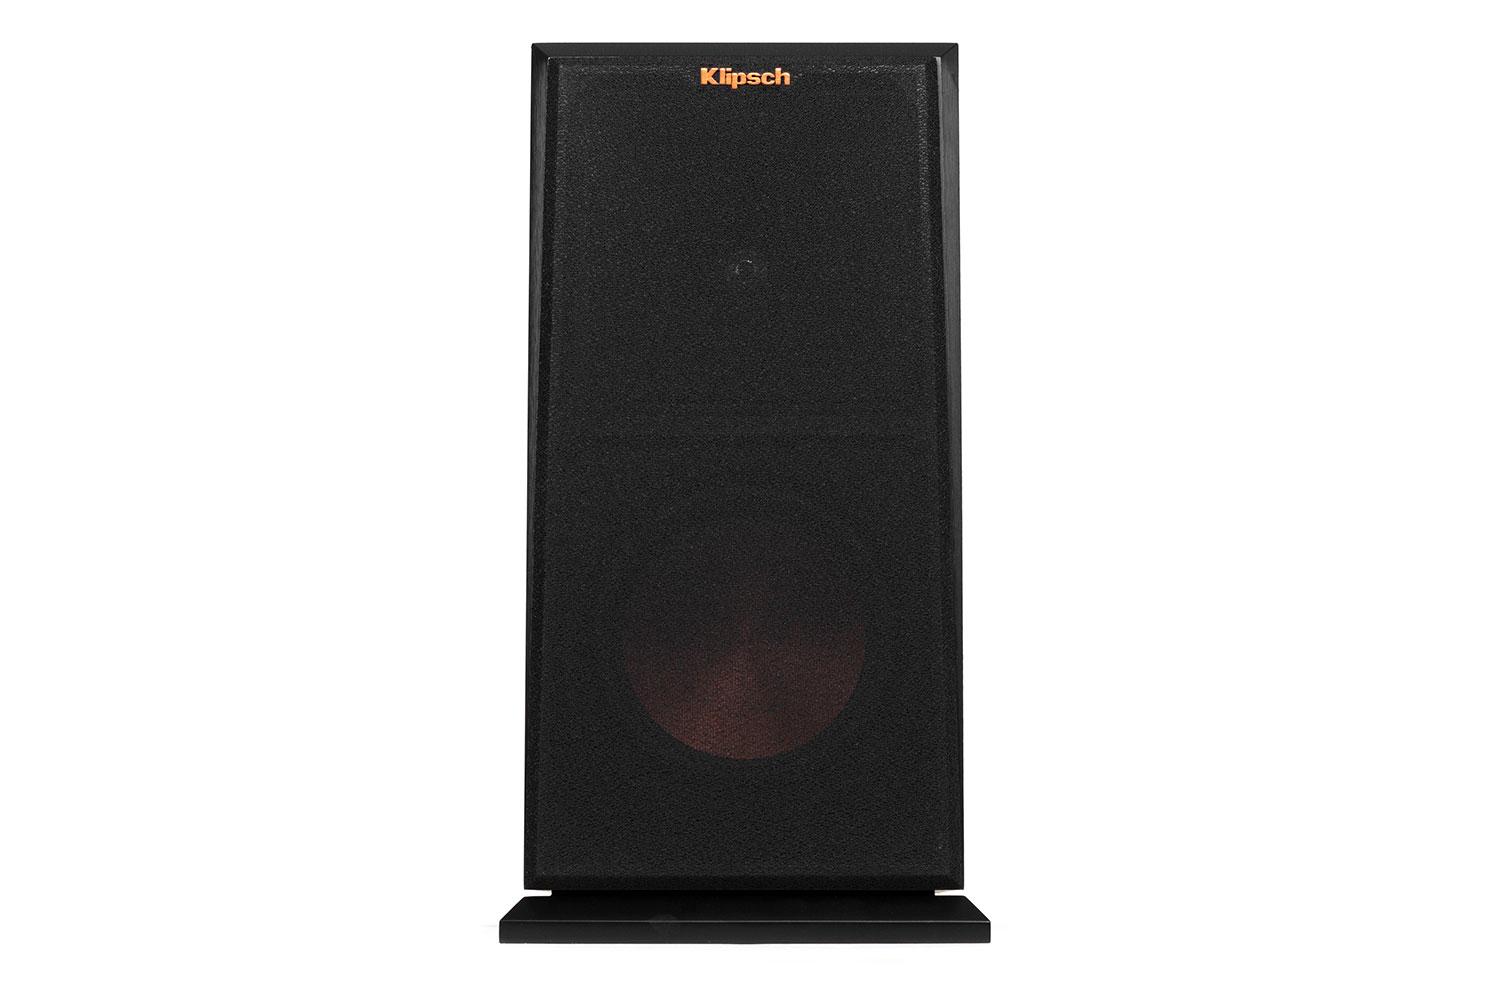 klipsch reference premier speaker system debuts at ces 2015 160m front grille